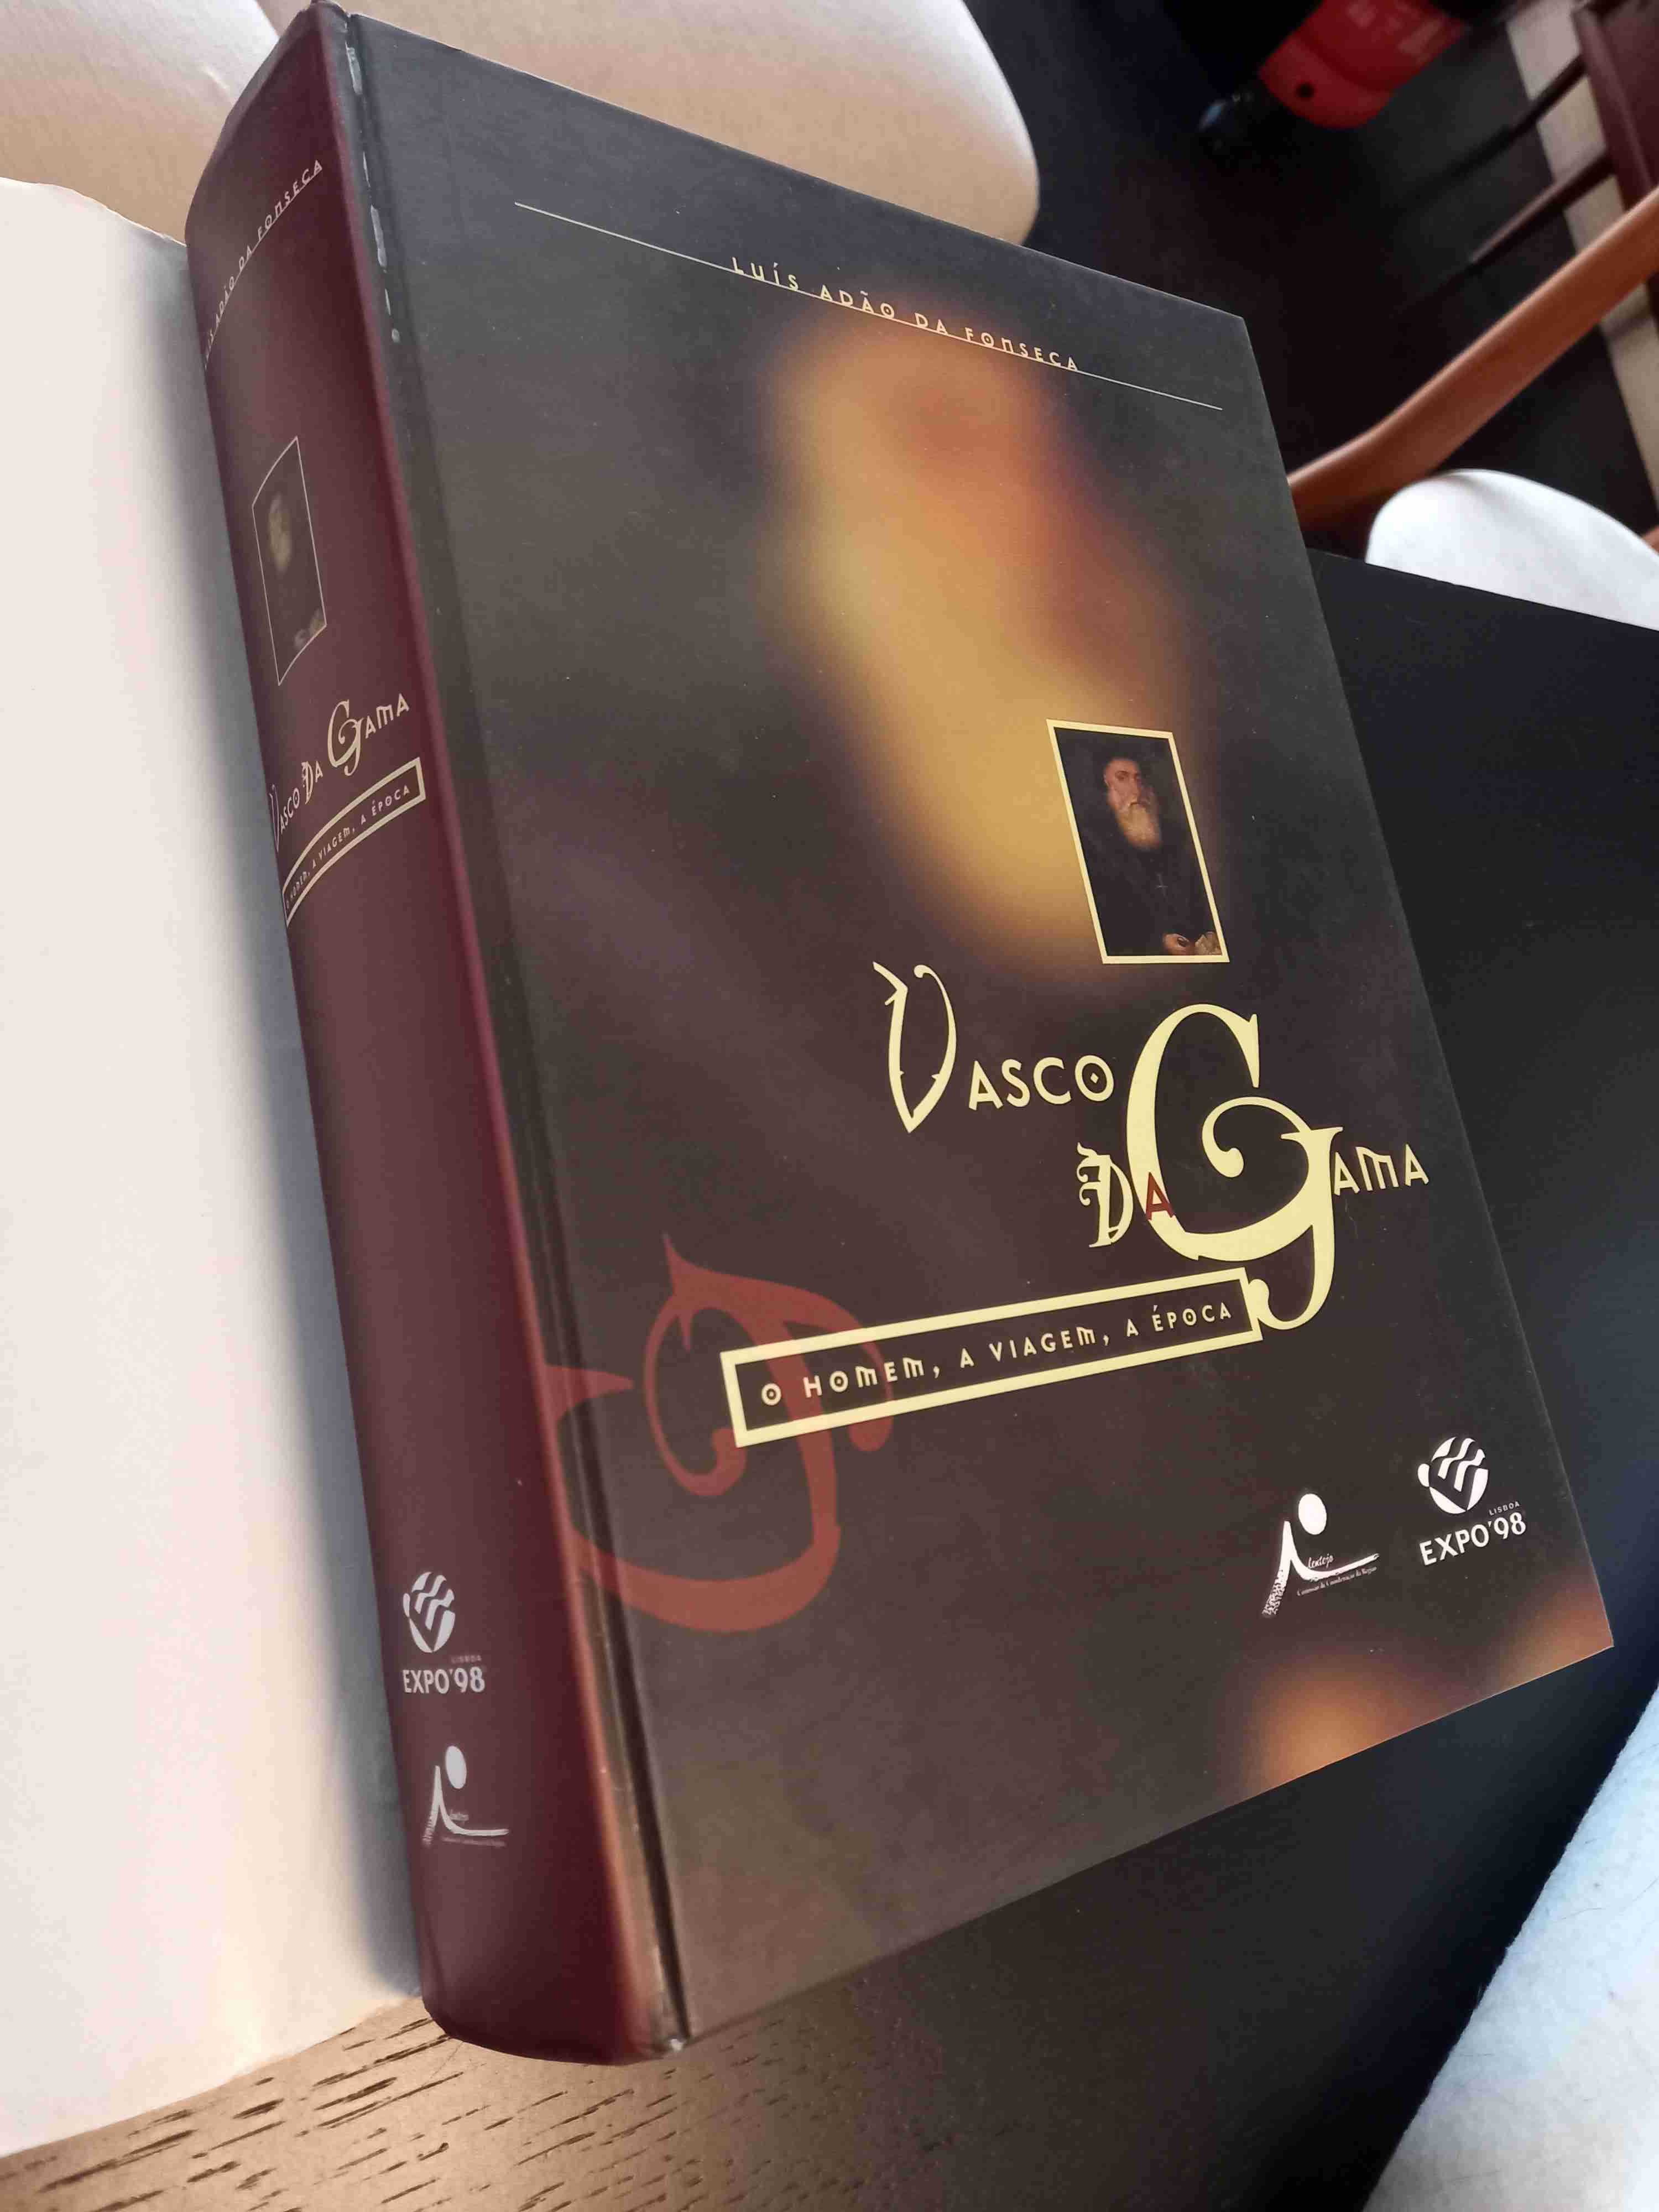 Vasco da Gama: O Homem, A Viagem, À Época - Edição Expo 98